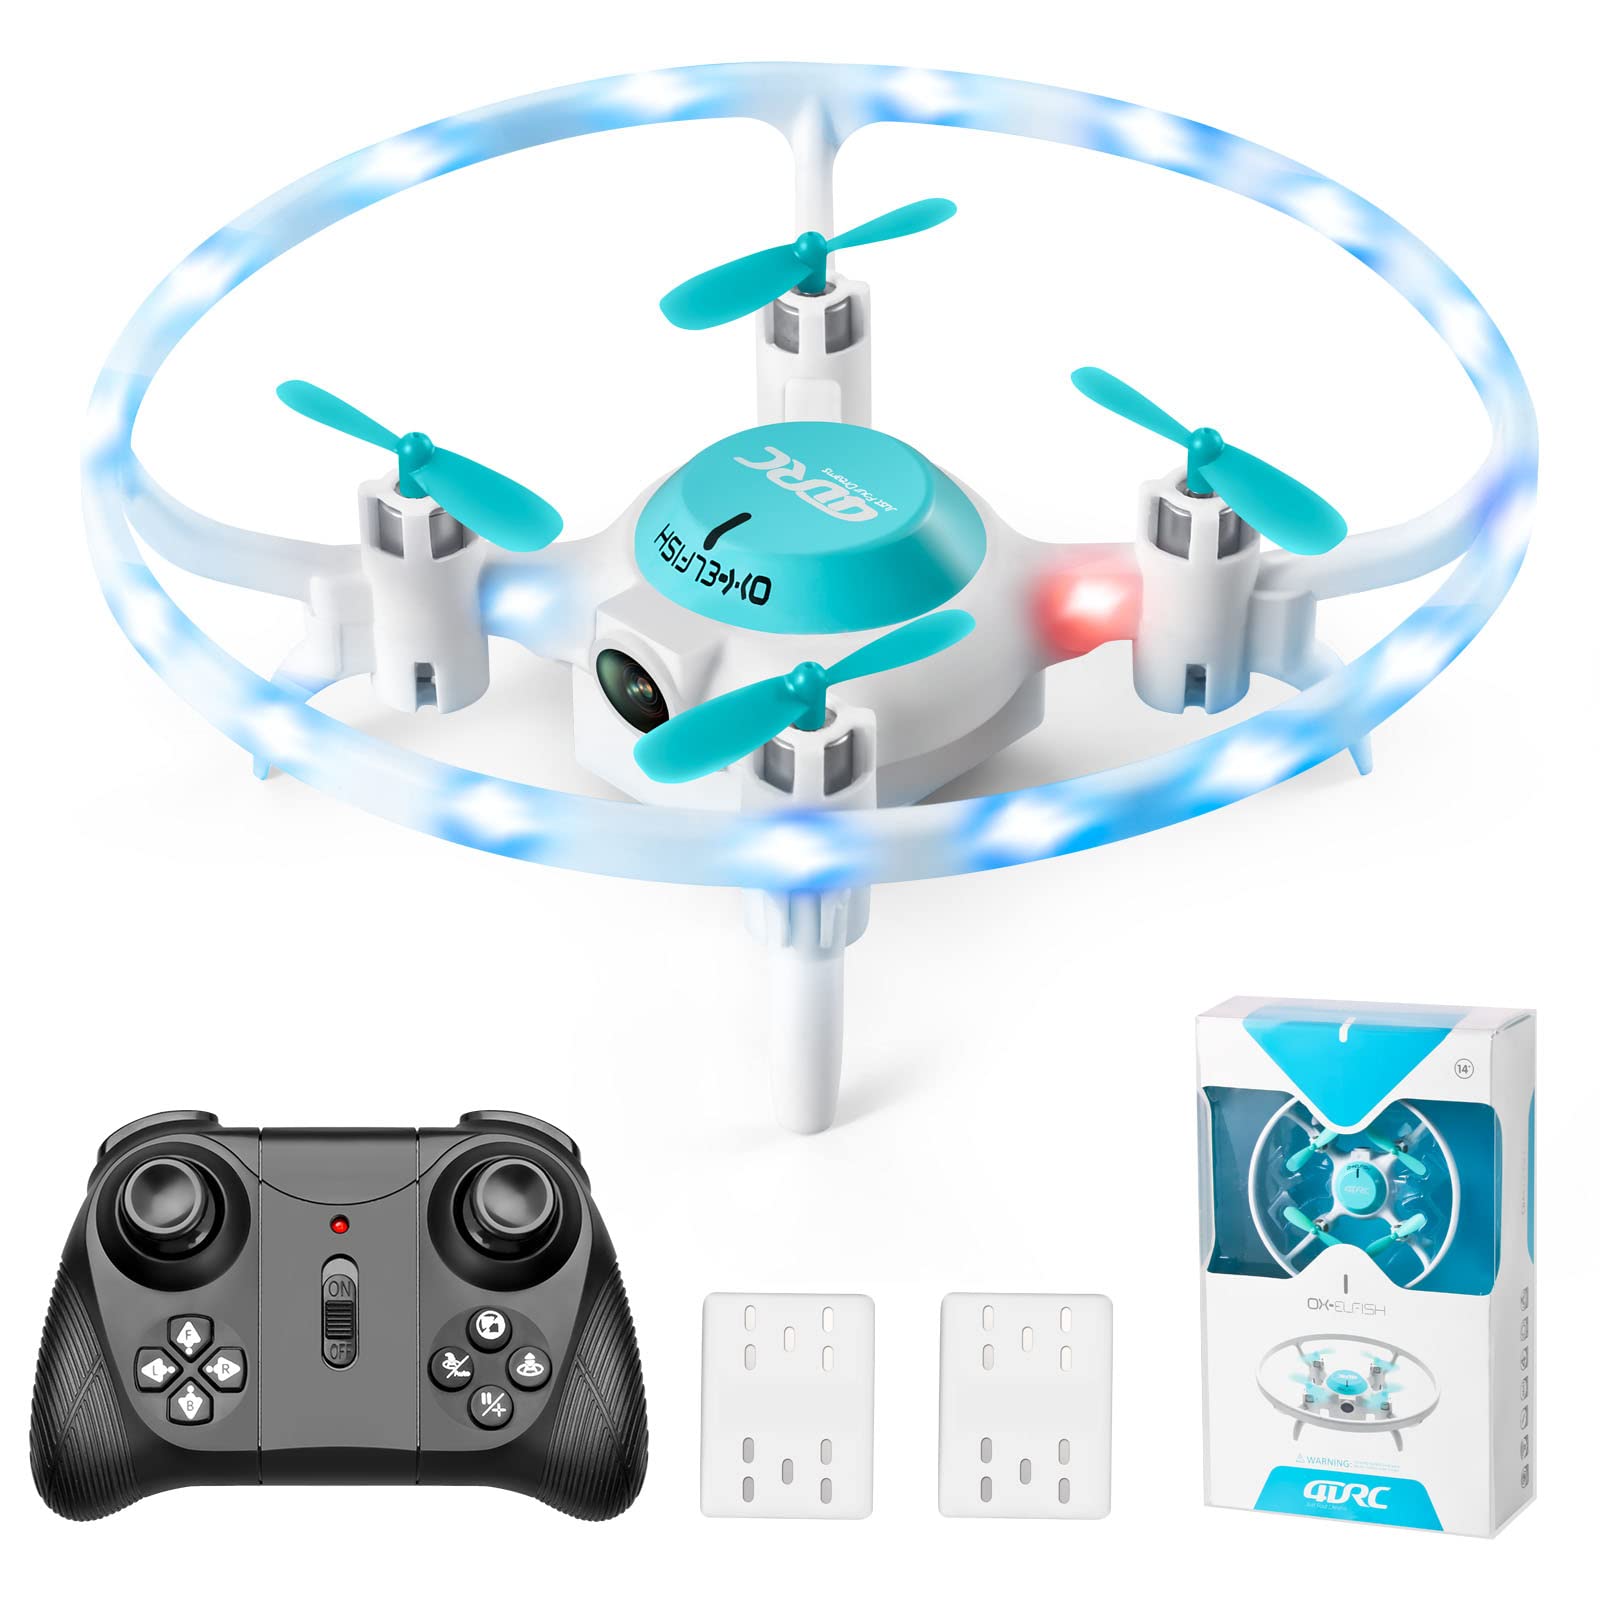 4DRC V5 Mini Drohne für Kinder und Anfänger,RC Quadrocopter mit LED-Licht,Flugbahnflug,One Key Start,Kreisfliege,Höhenhaltung,3D Flips,Spielzeug Geschenk Kinderdrohne von 4DRC